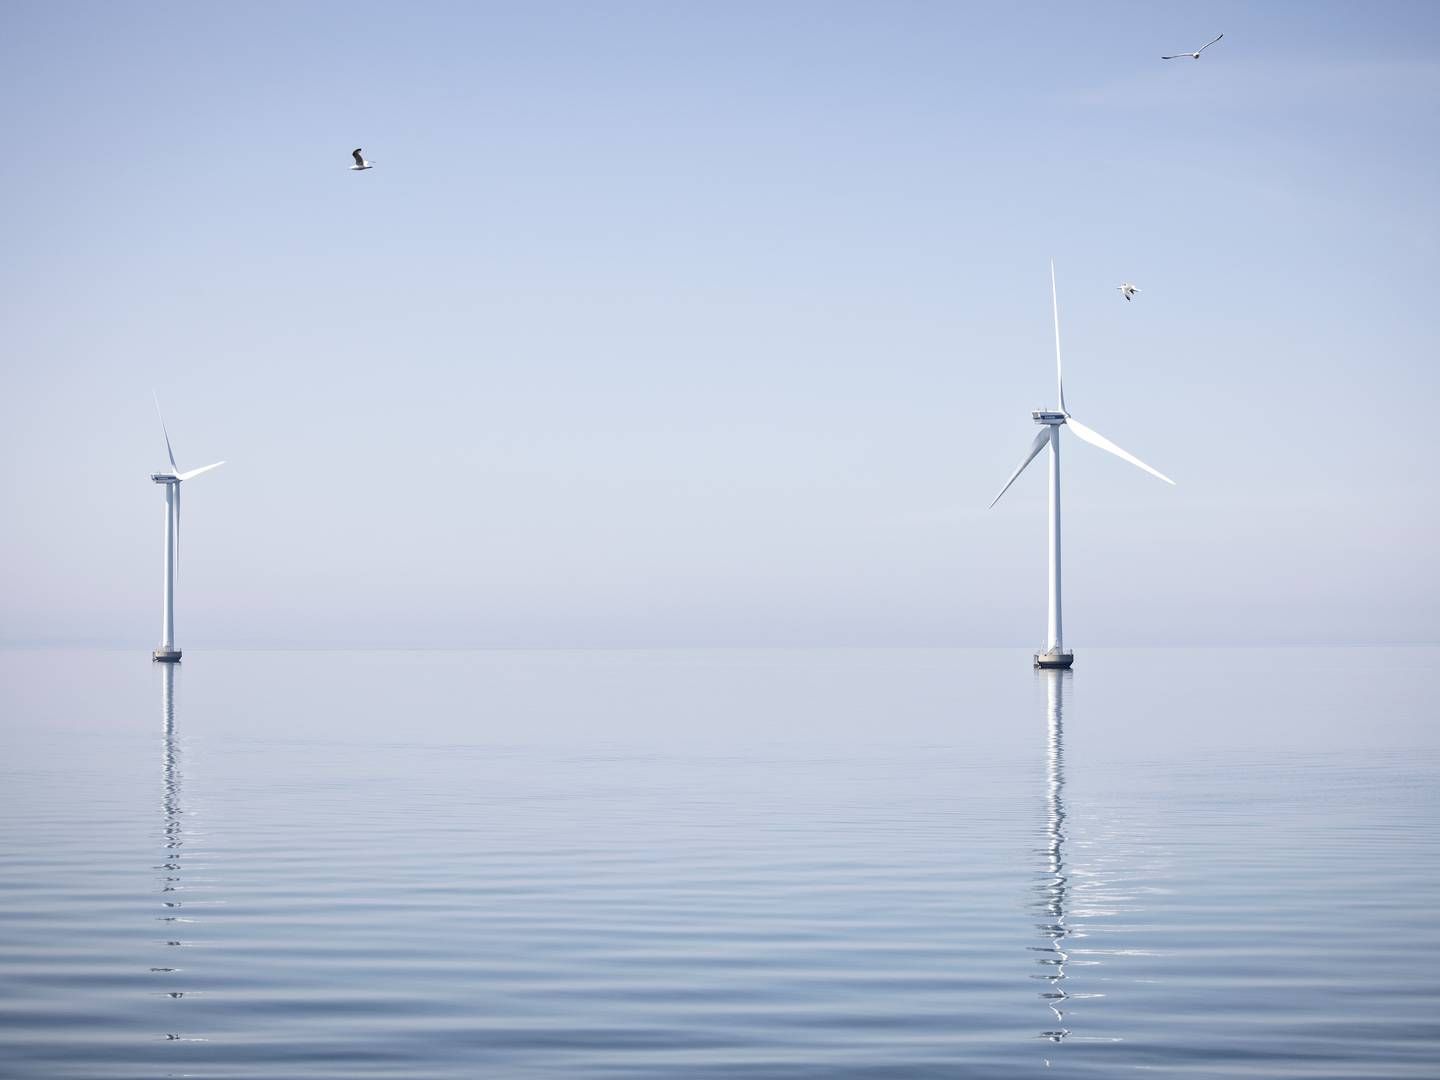 De kystnære havmøller ved Sprogø er fortsat European Energys eneste af slagsen. Efter 12 års arbejde opgiver udvikleren nu projekt syd for Skælskør. | Foto: Marius Renner